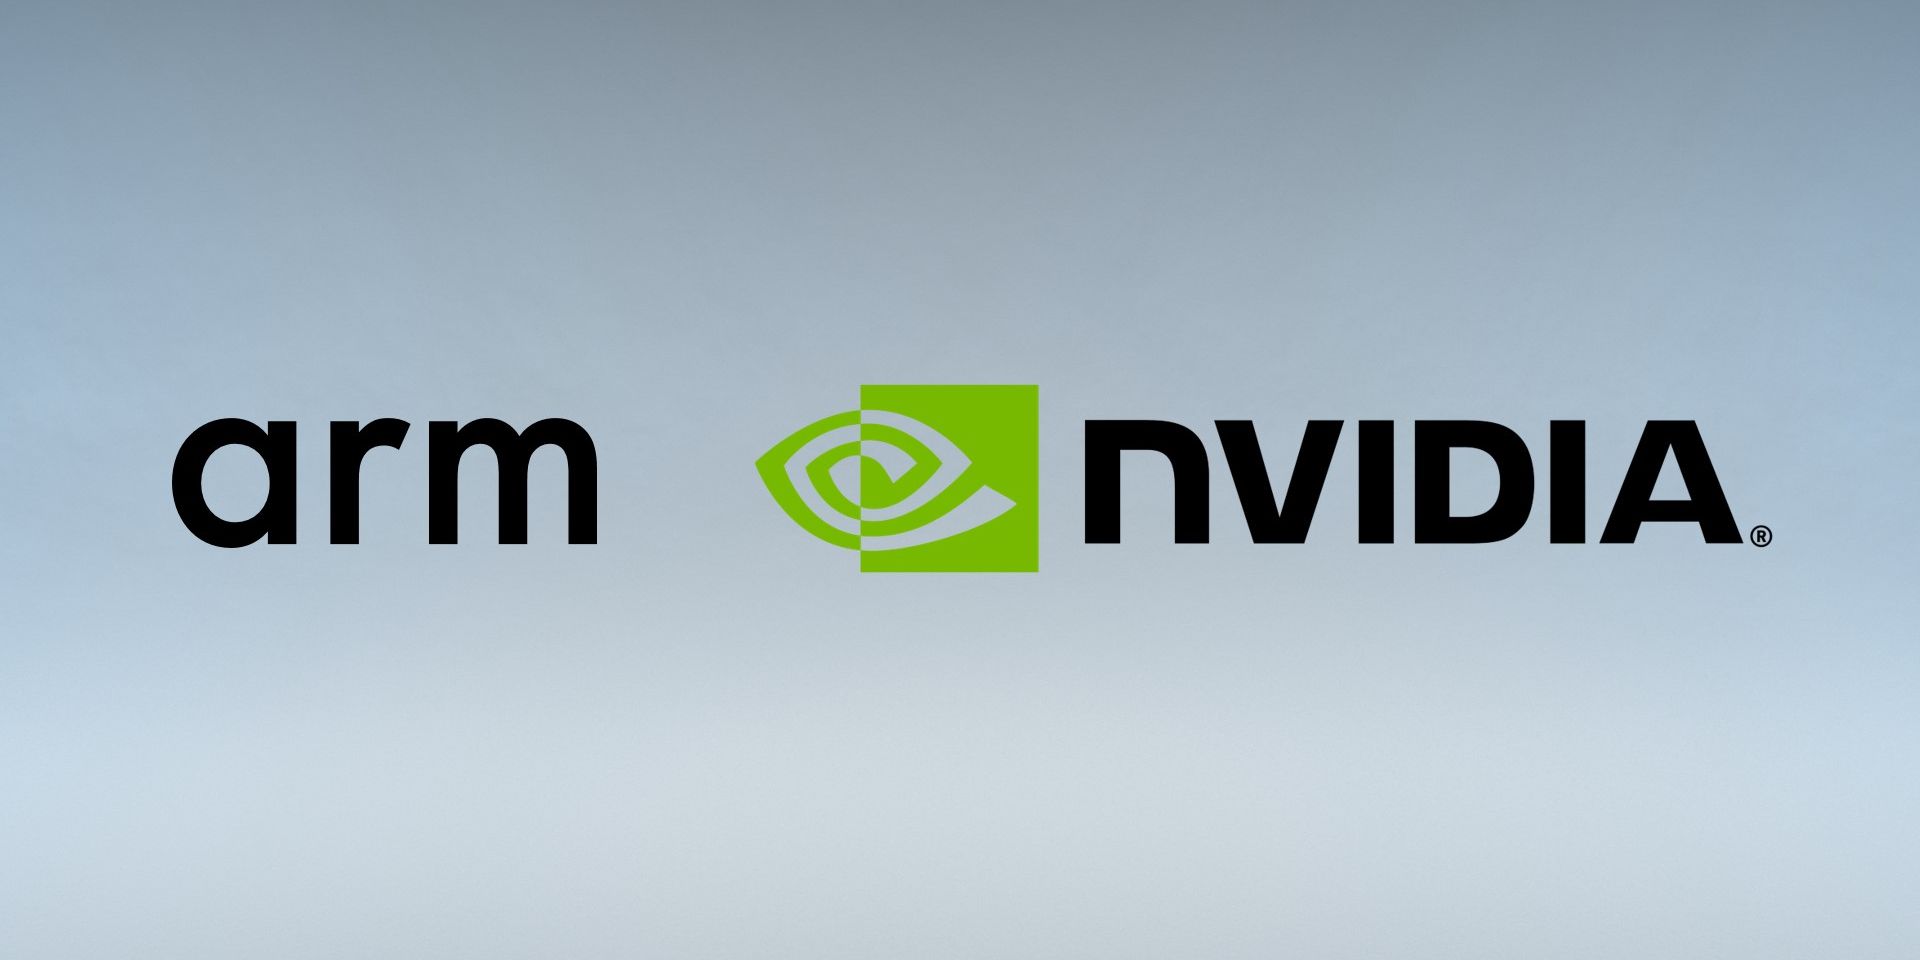 Arm and Nvidia logos